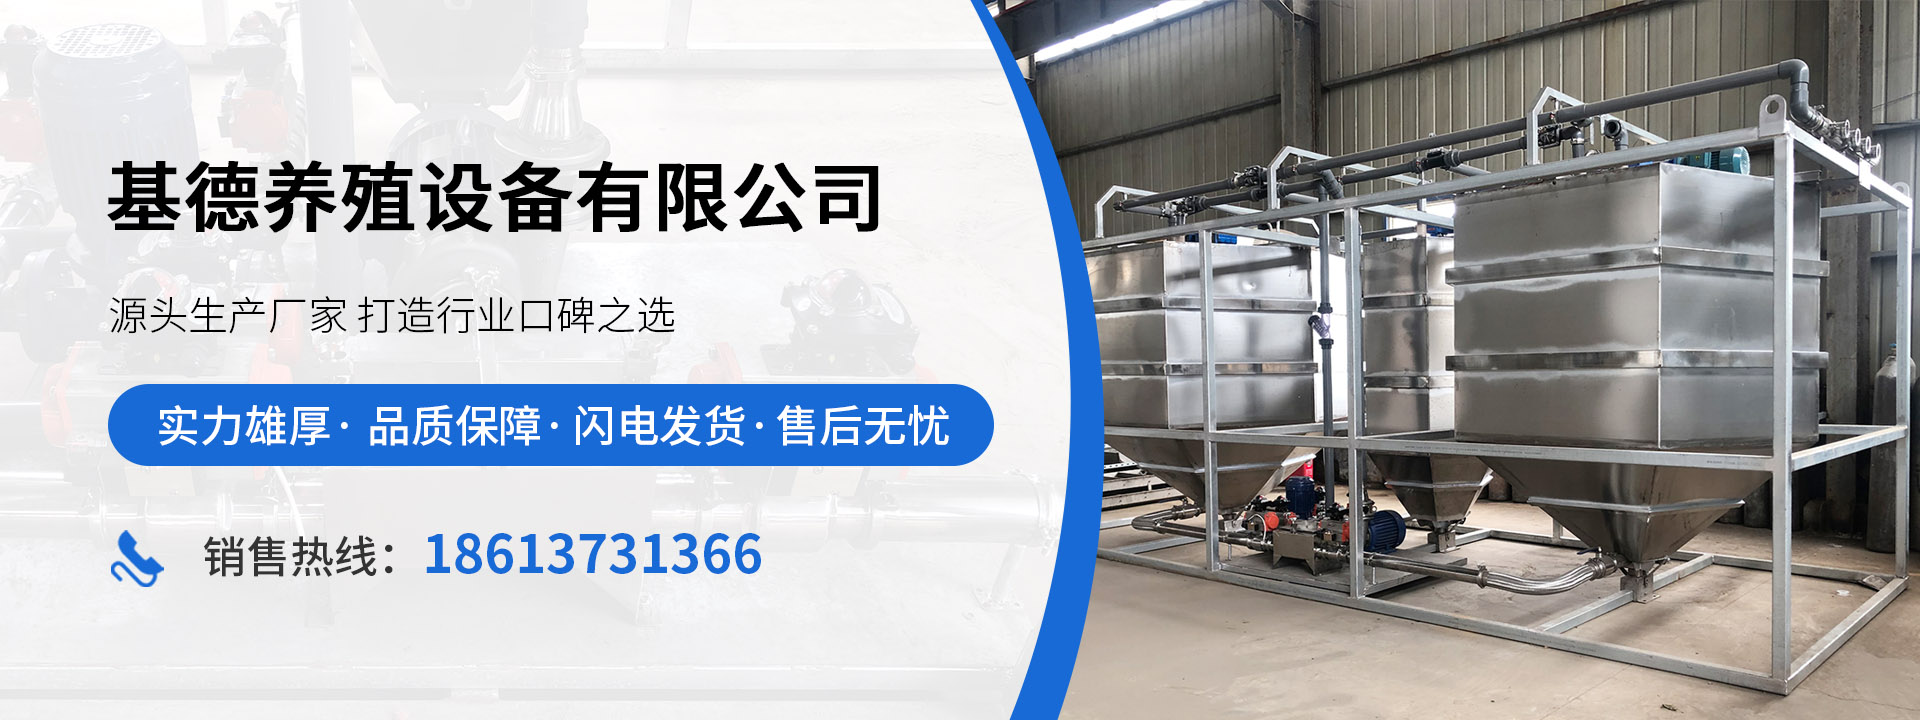 河南省基德养殖设备有限公司